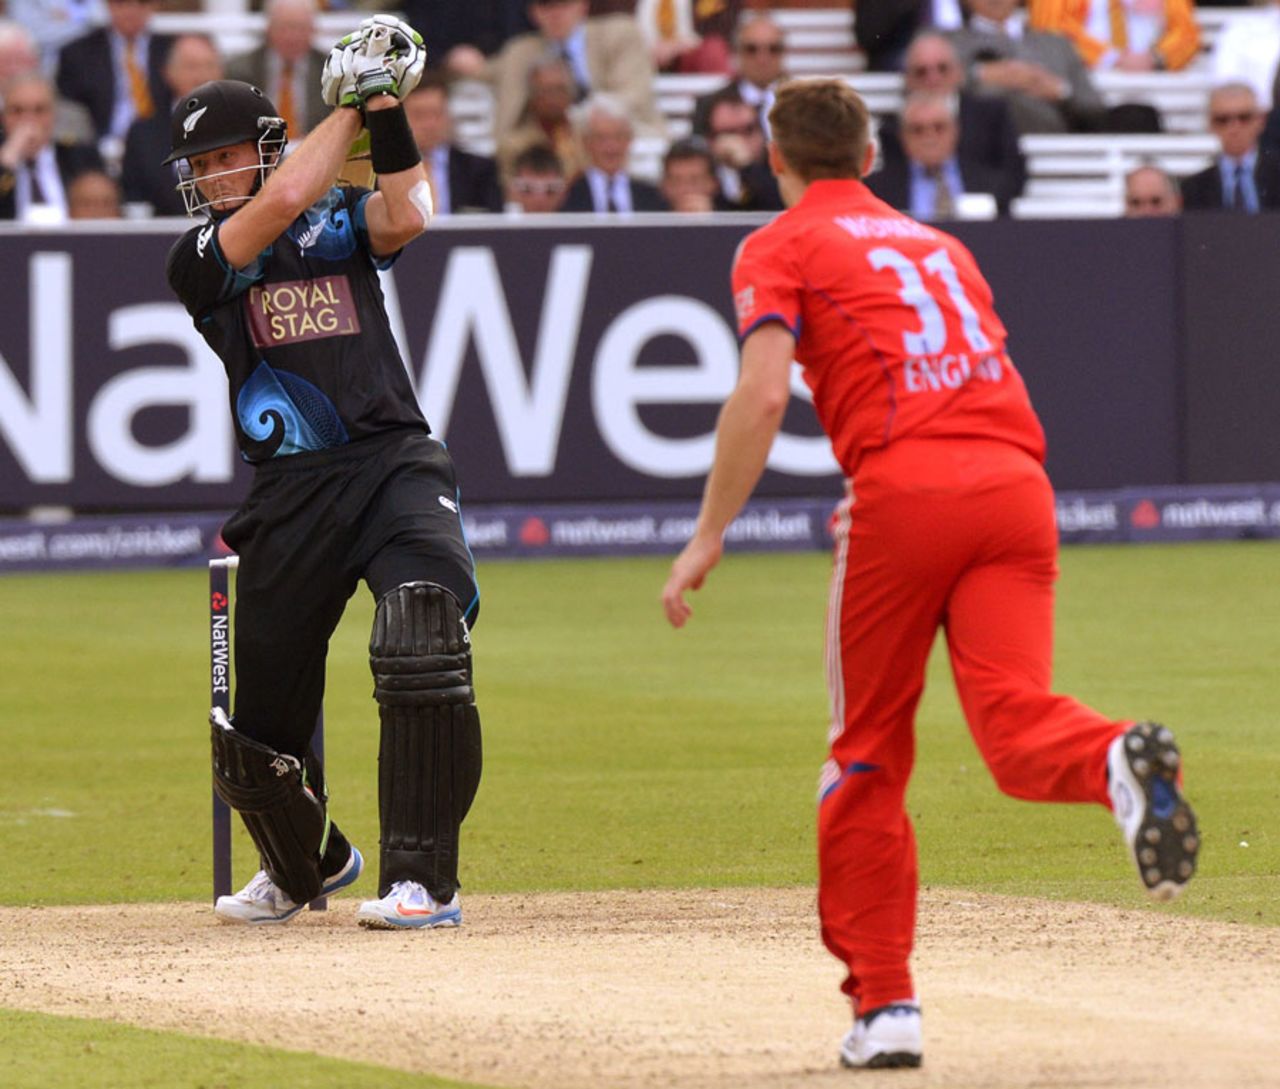 Martin Guptill made a steady half-century, England v New Zealand, 1st ODI, Lord's, May 31, 2013